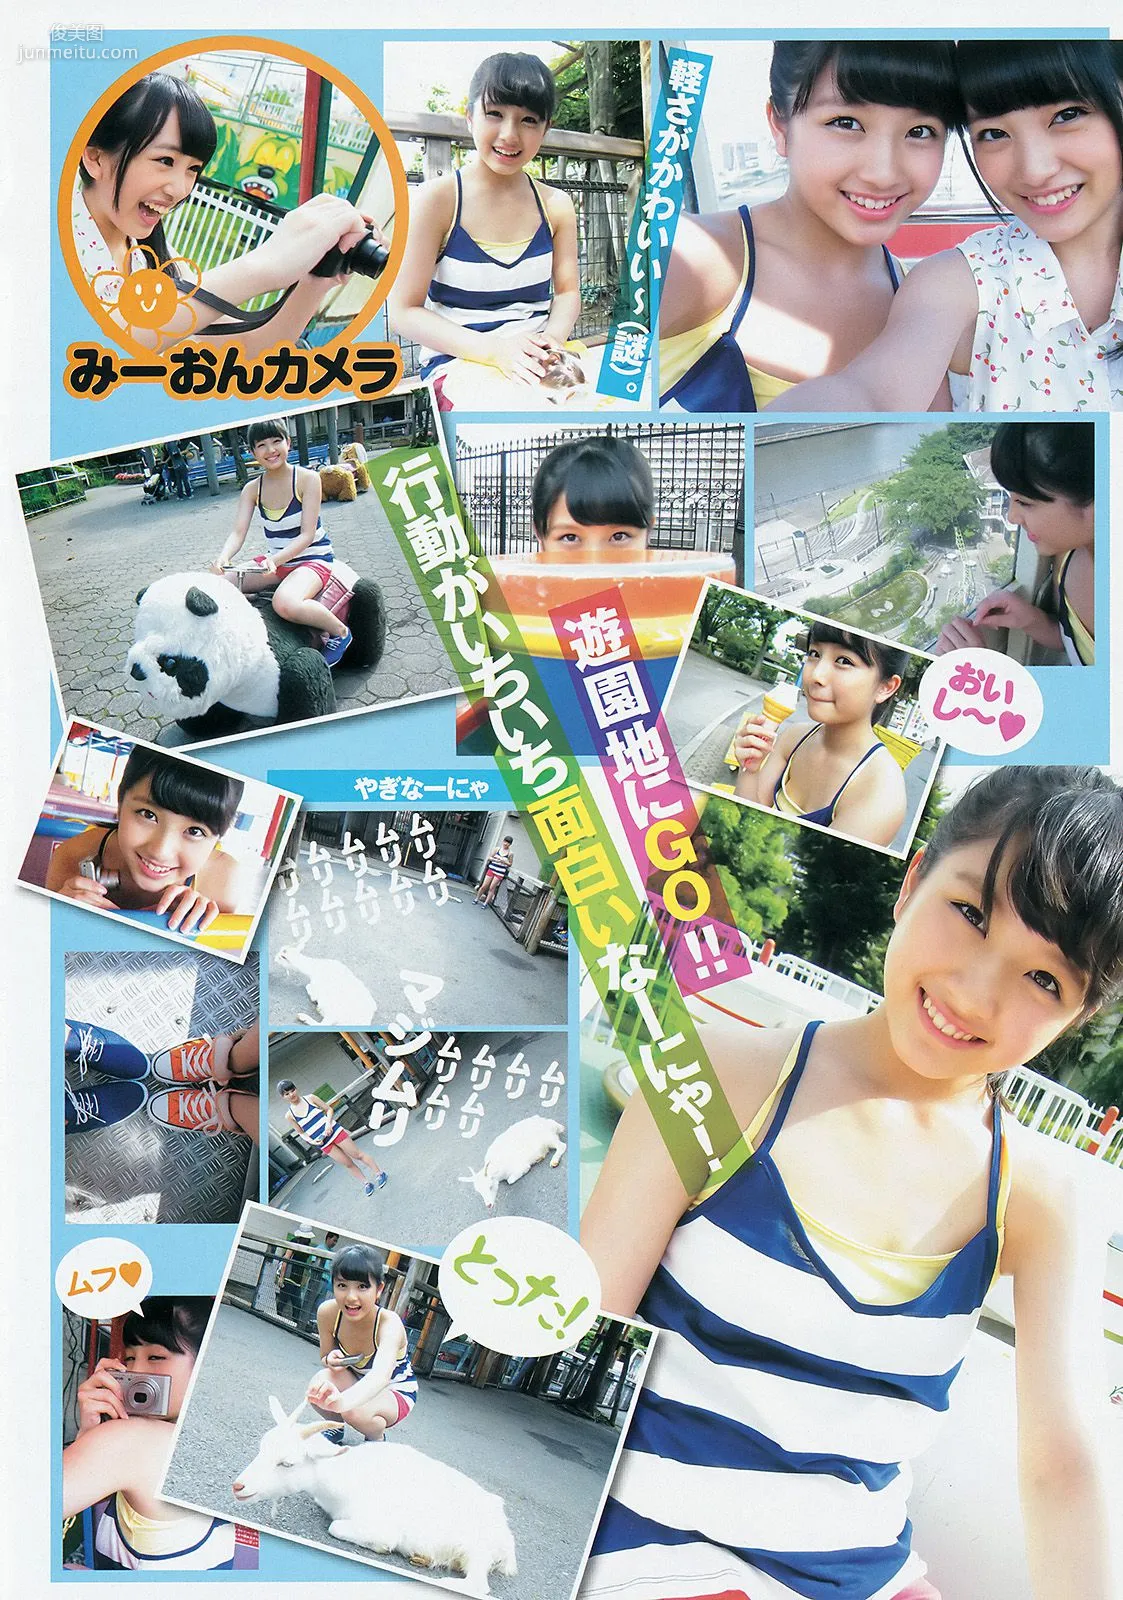 西内まりや 白河優菜 大和田南那 向井地美音 [Weekly Young Jump] 2014年No.36-37写真杂志7